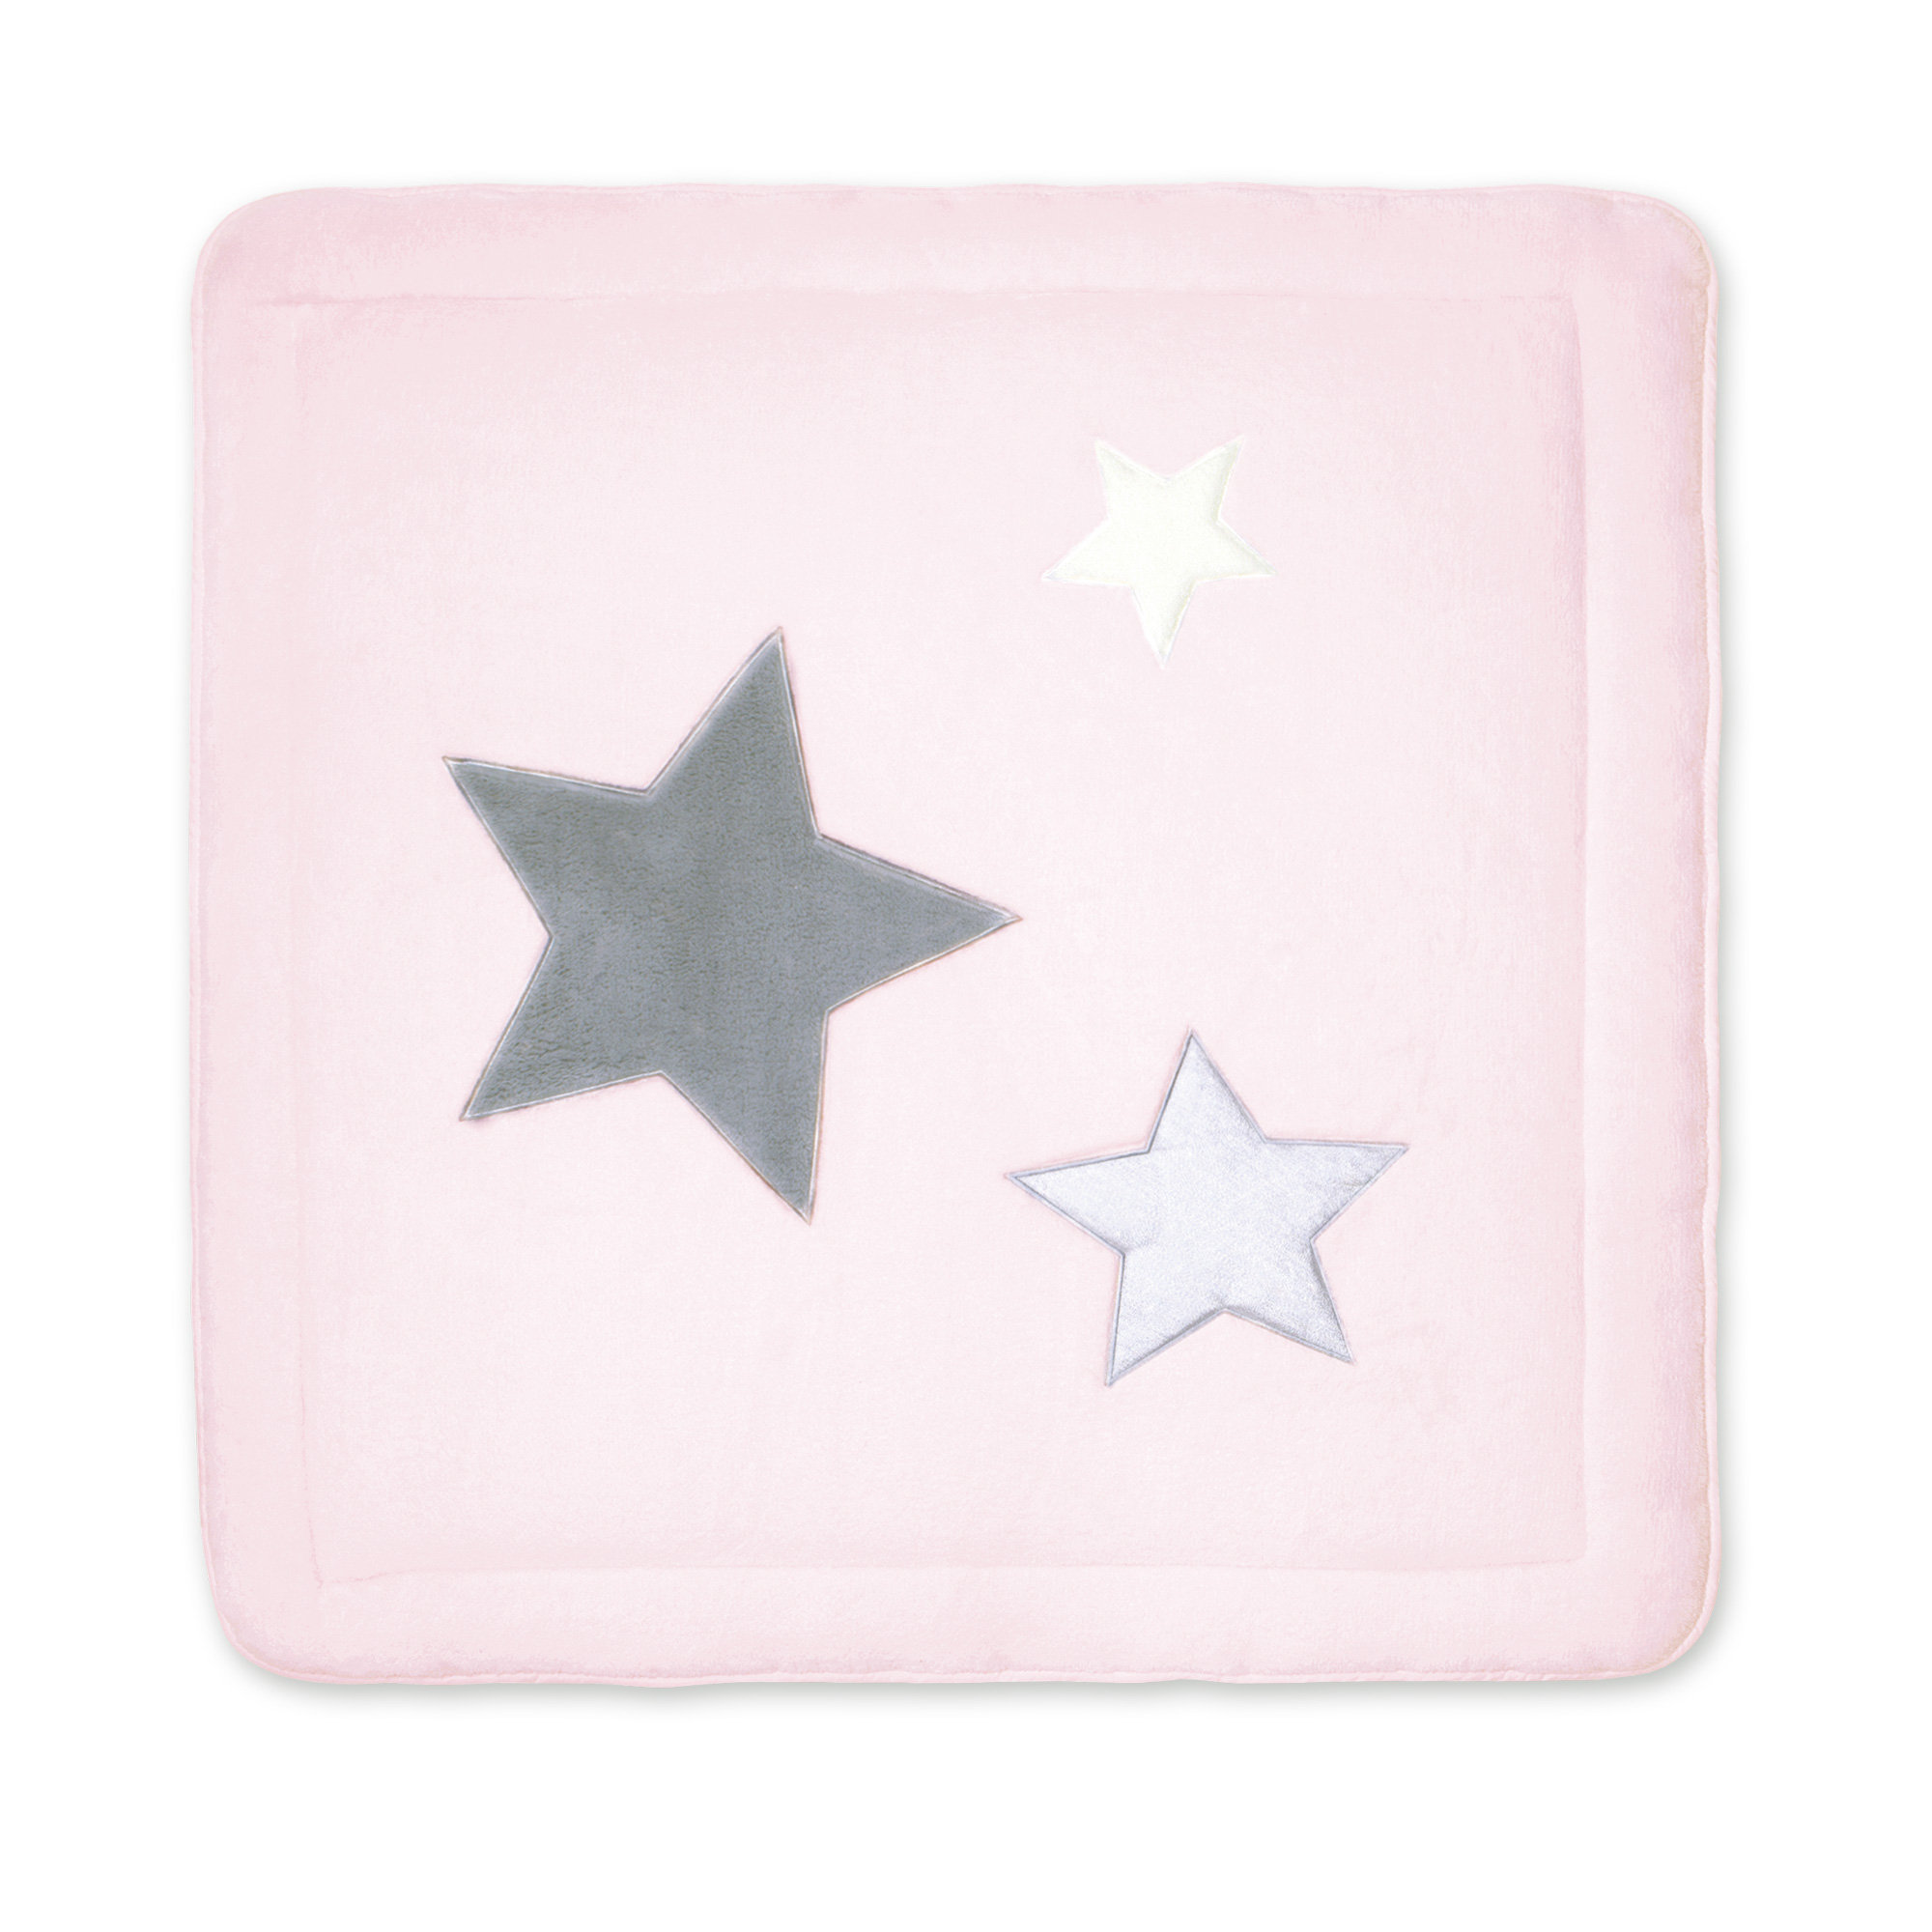 Laufstalleinlage Krabbeldecke Pady softy + terry 100x100cm STARY Baby rosa kleine Sterne